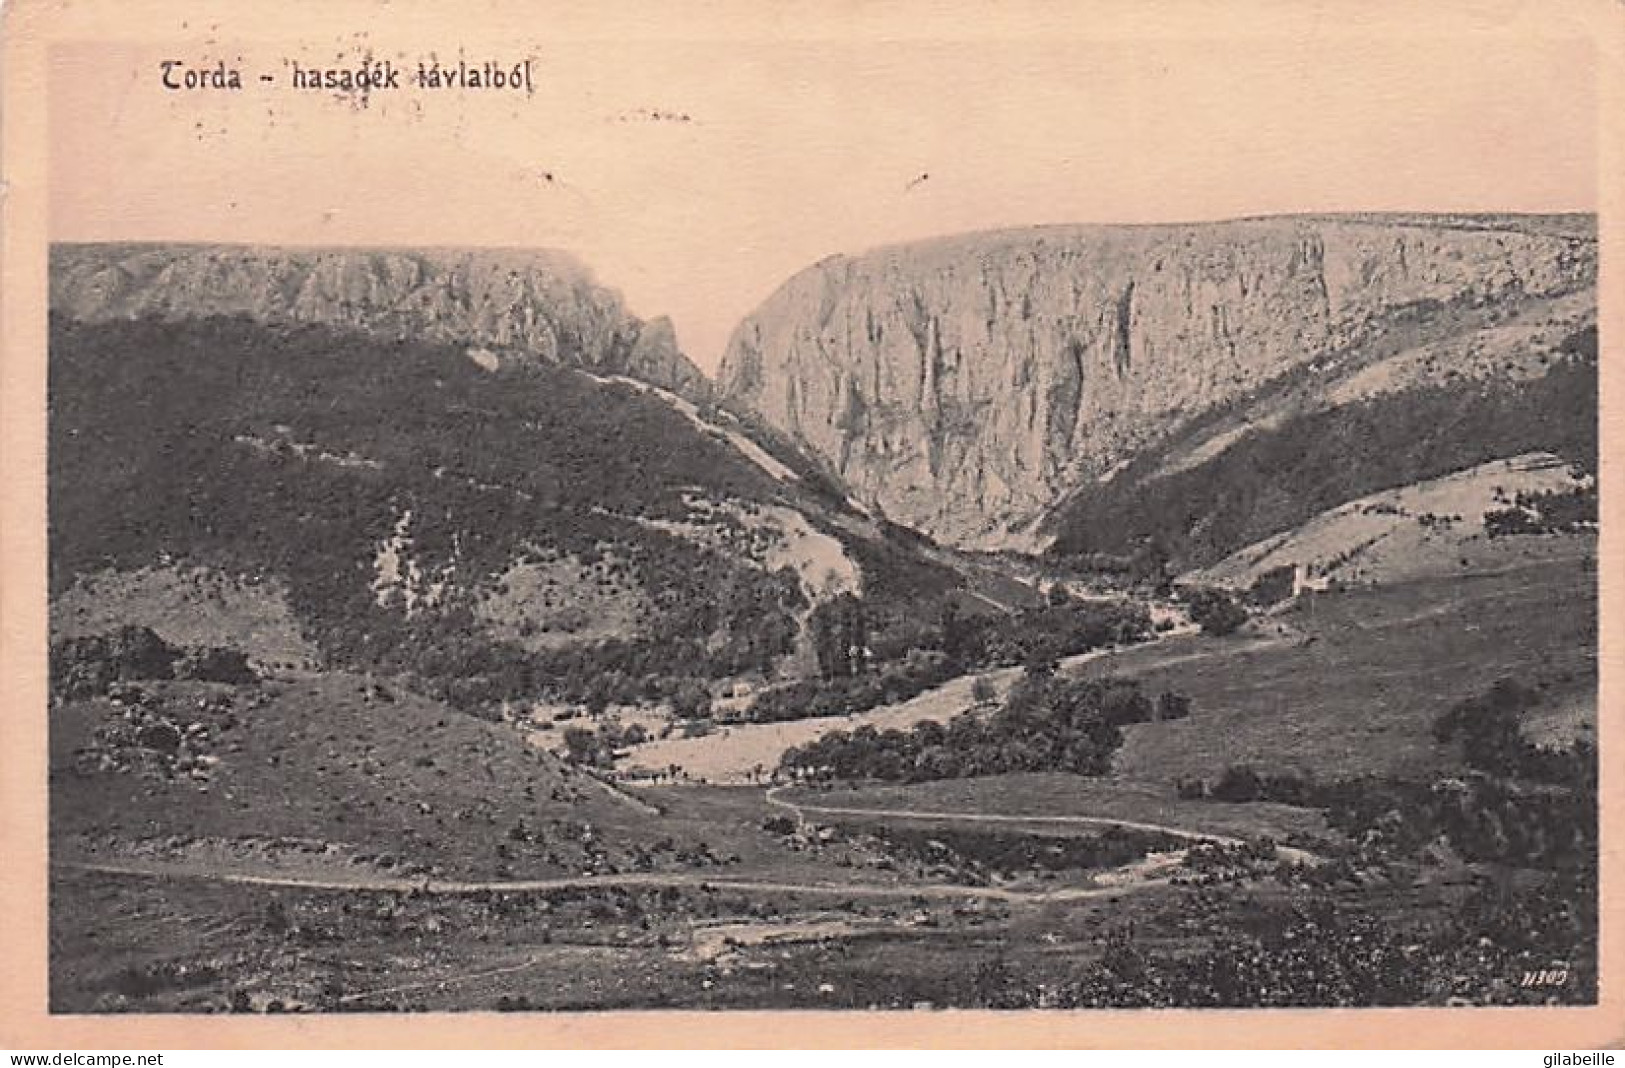 TURDA - TORDA  - Hasadek Taylatbol - 1914 - Rumänien